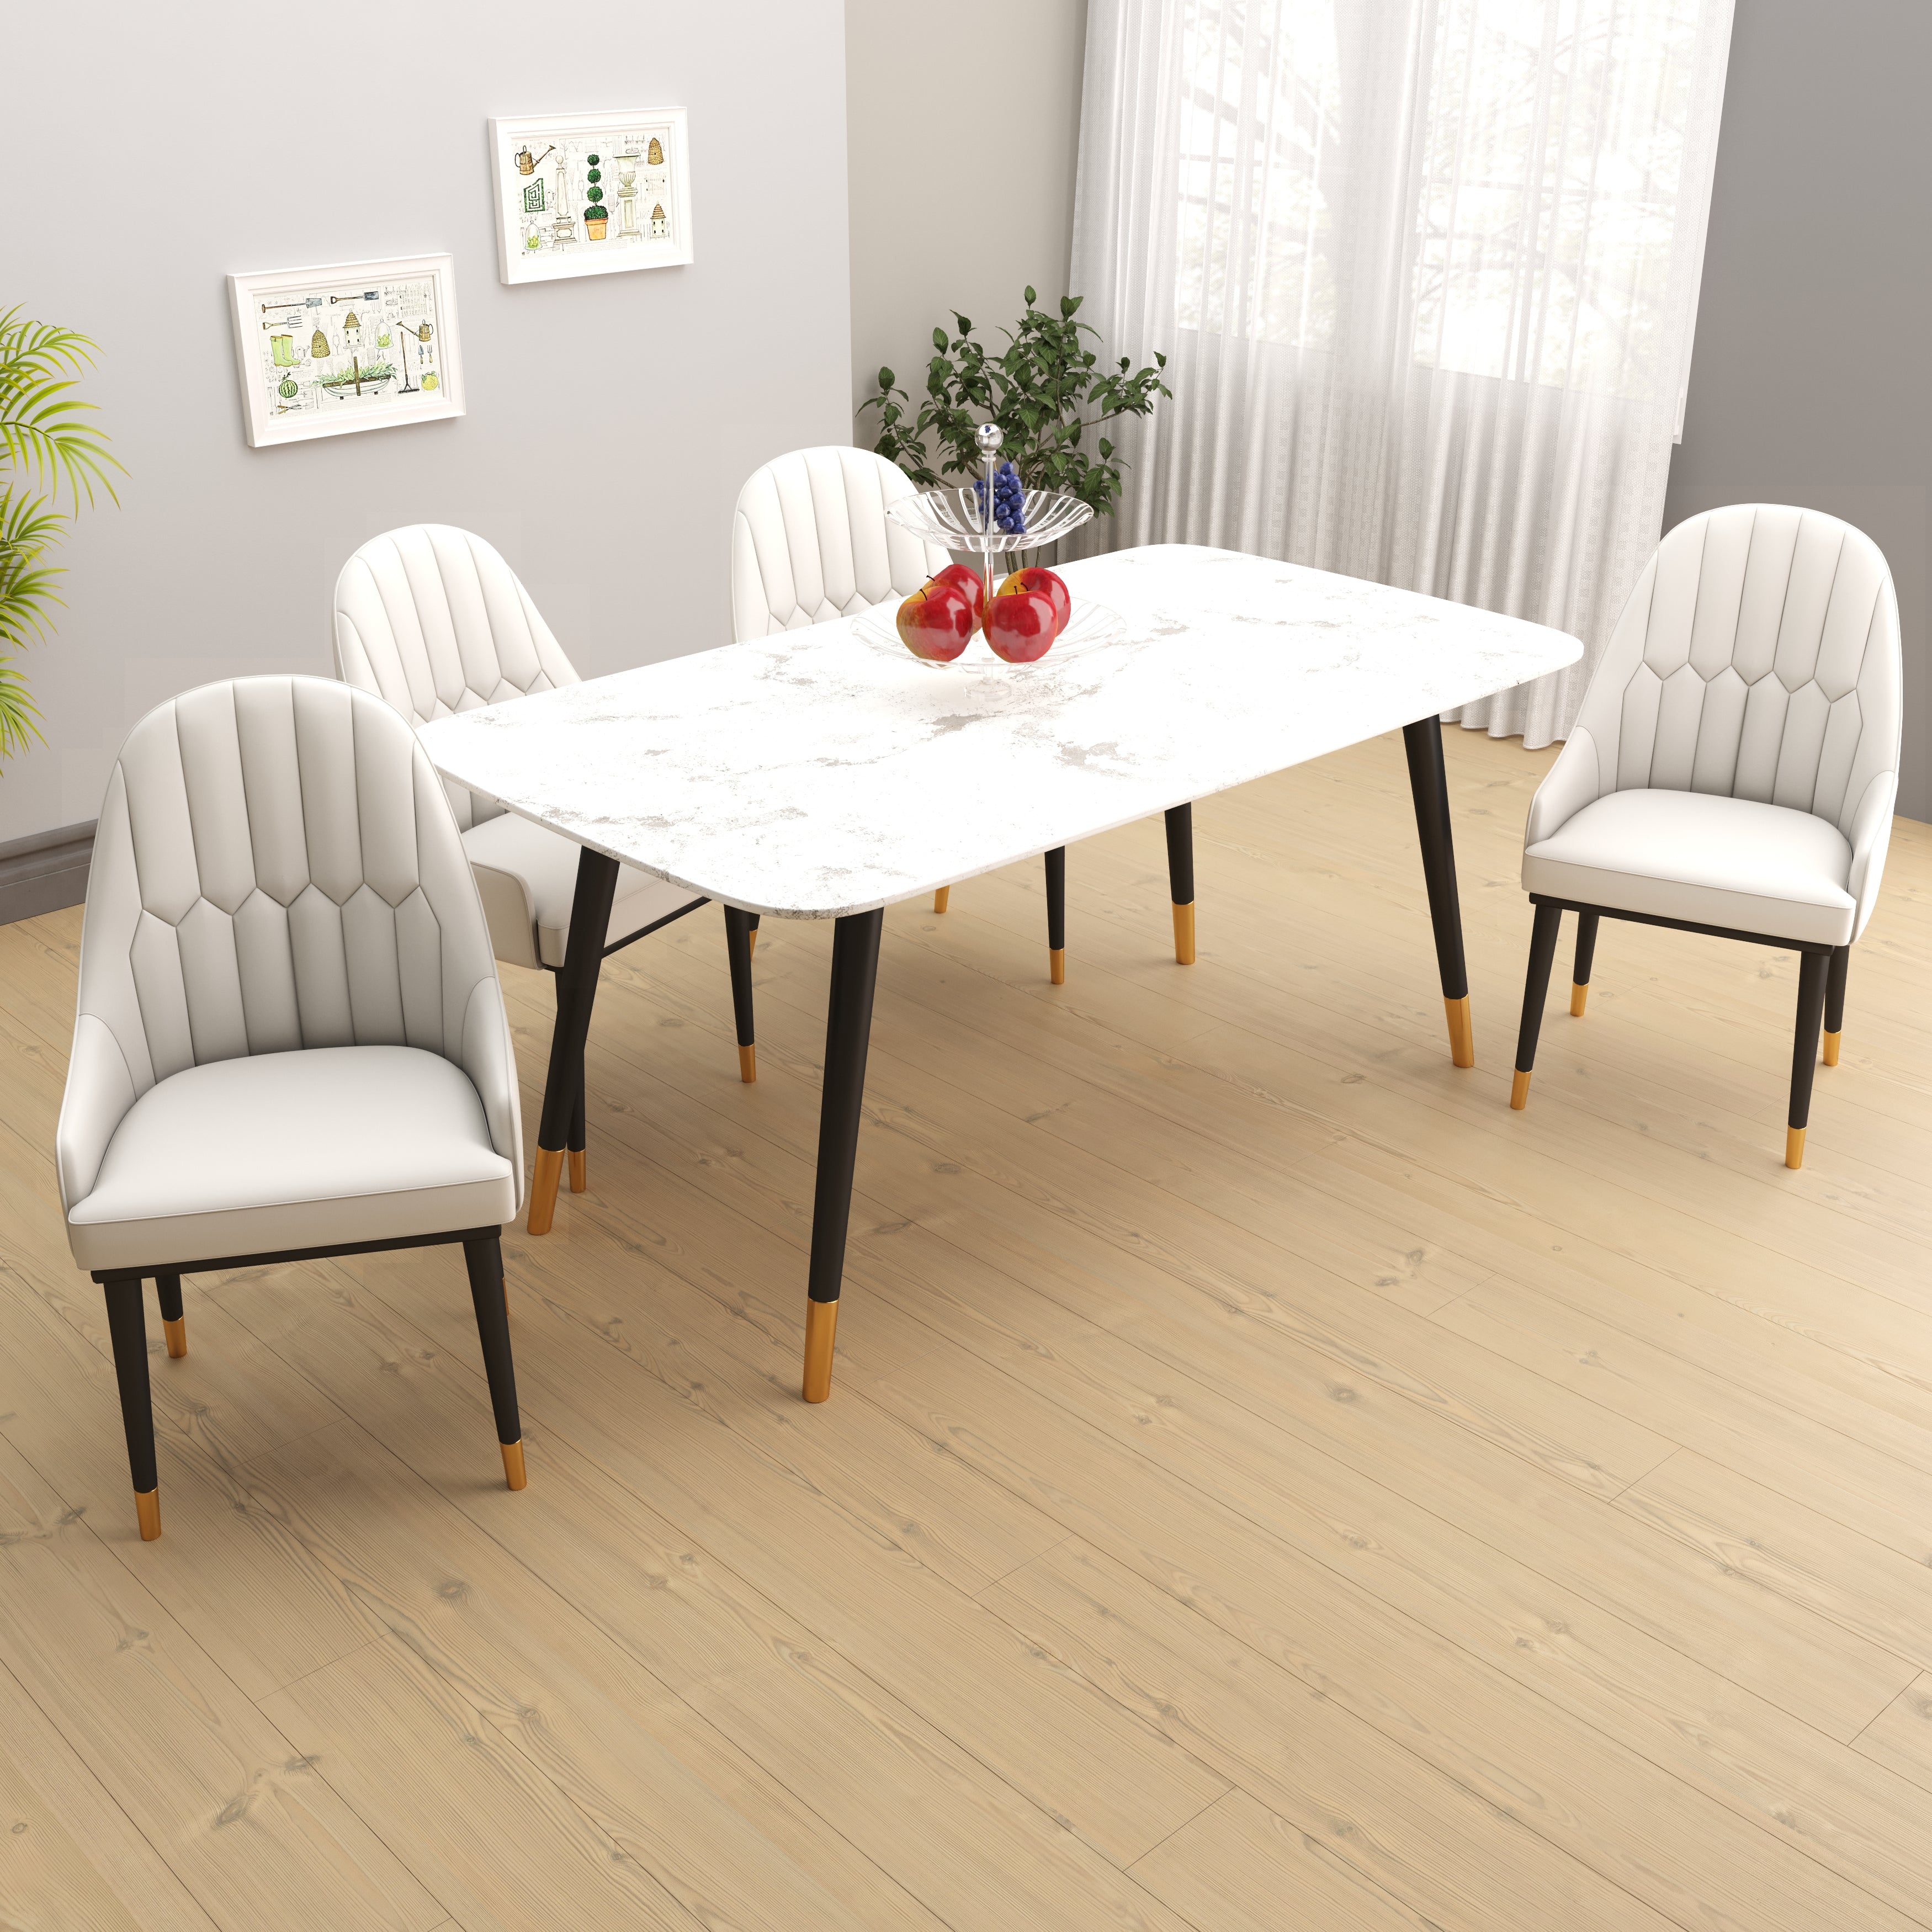 Velets Aura Set of 4 Upholstered Side Chair - Faux Leather -  White - Golden Tip Leg